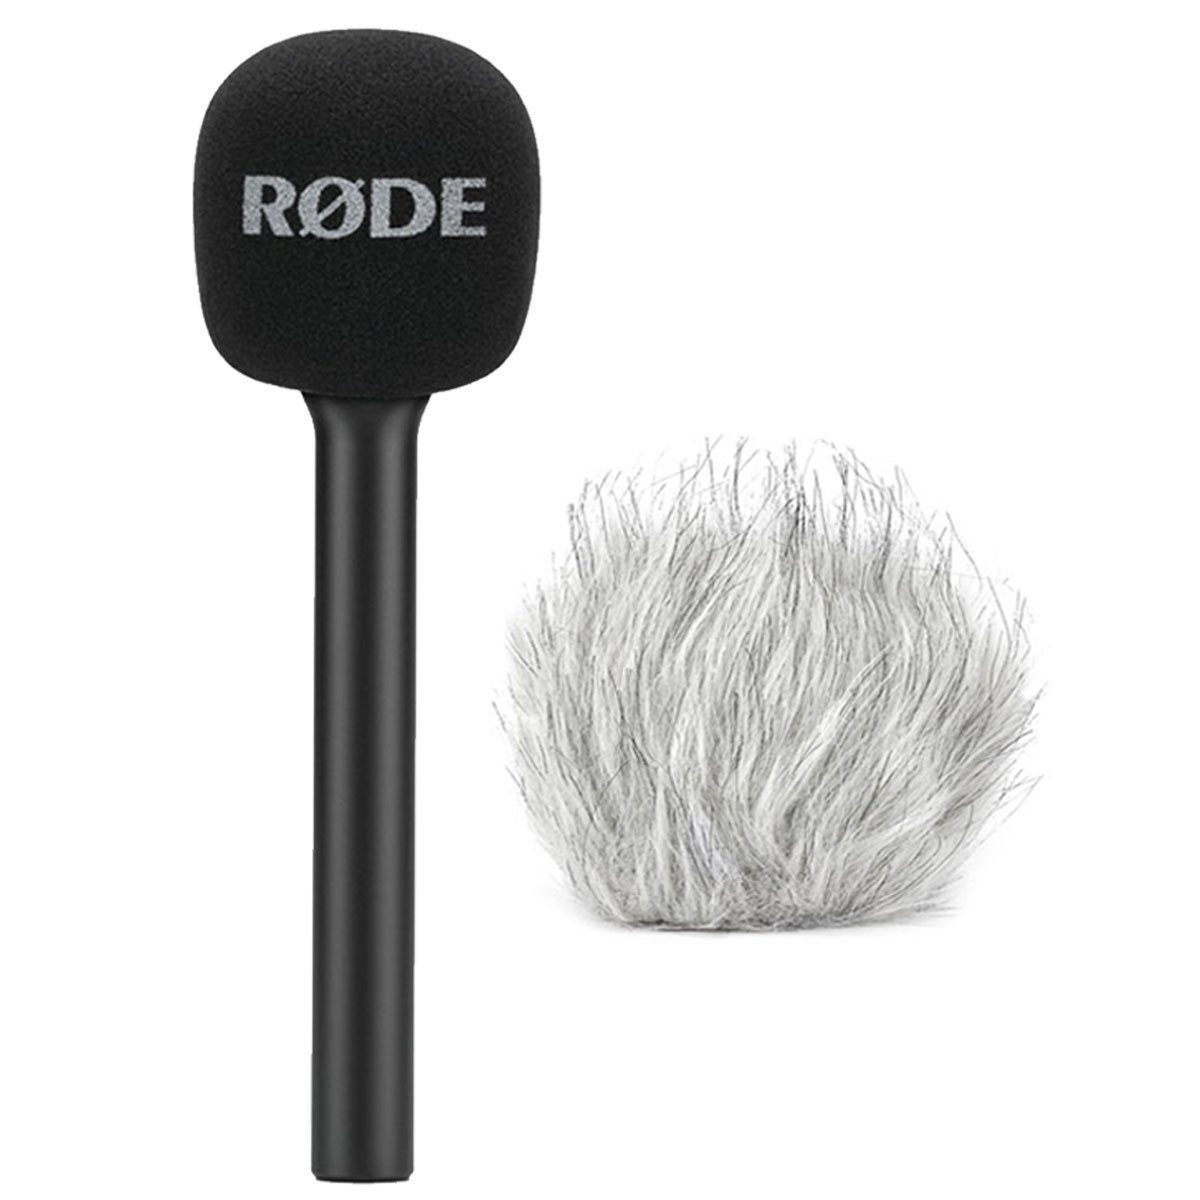 RODE Microphones Mikrofon Rode Interview GO Handadapter für Wireless GO mit WSBW Fell-Windschutz